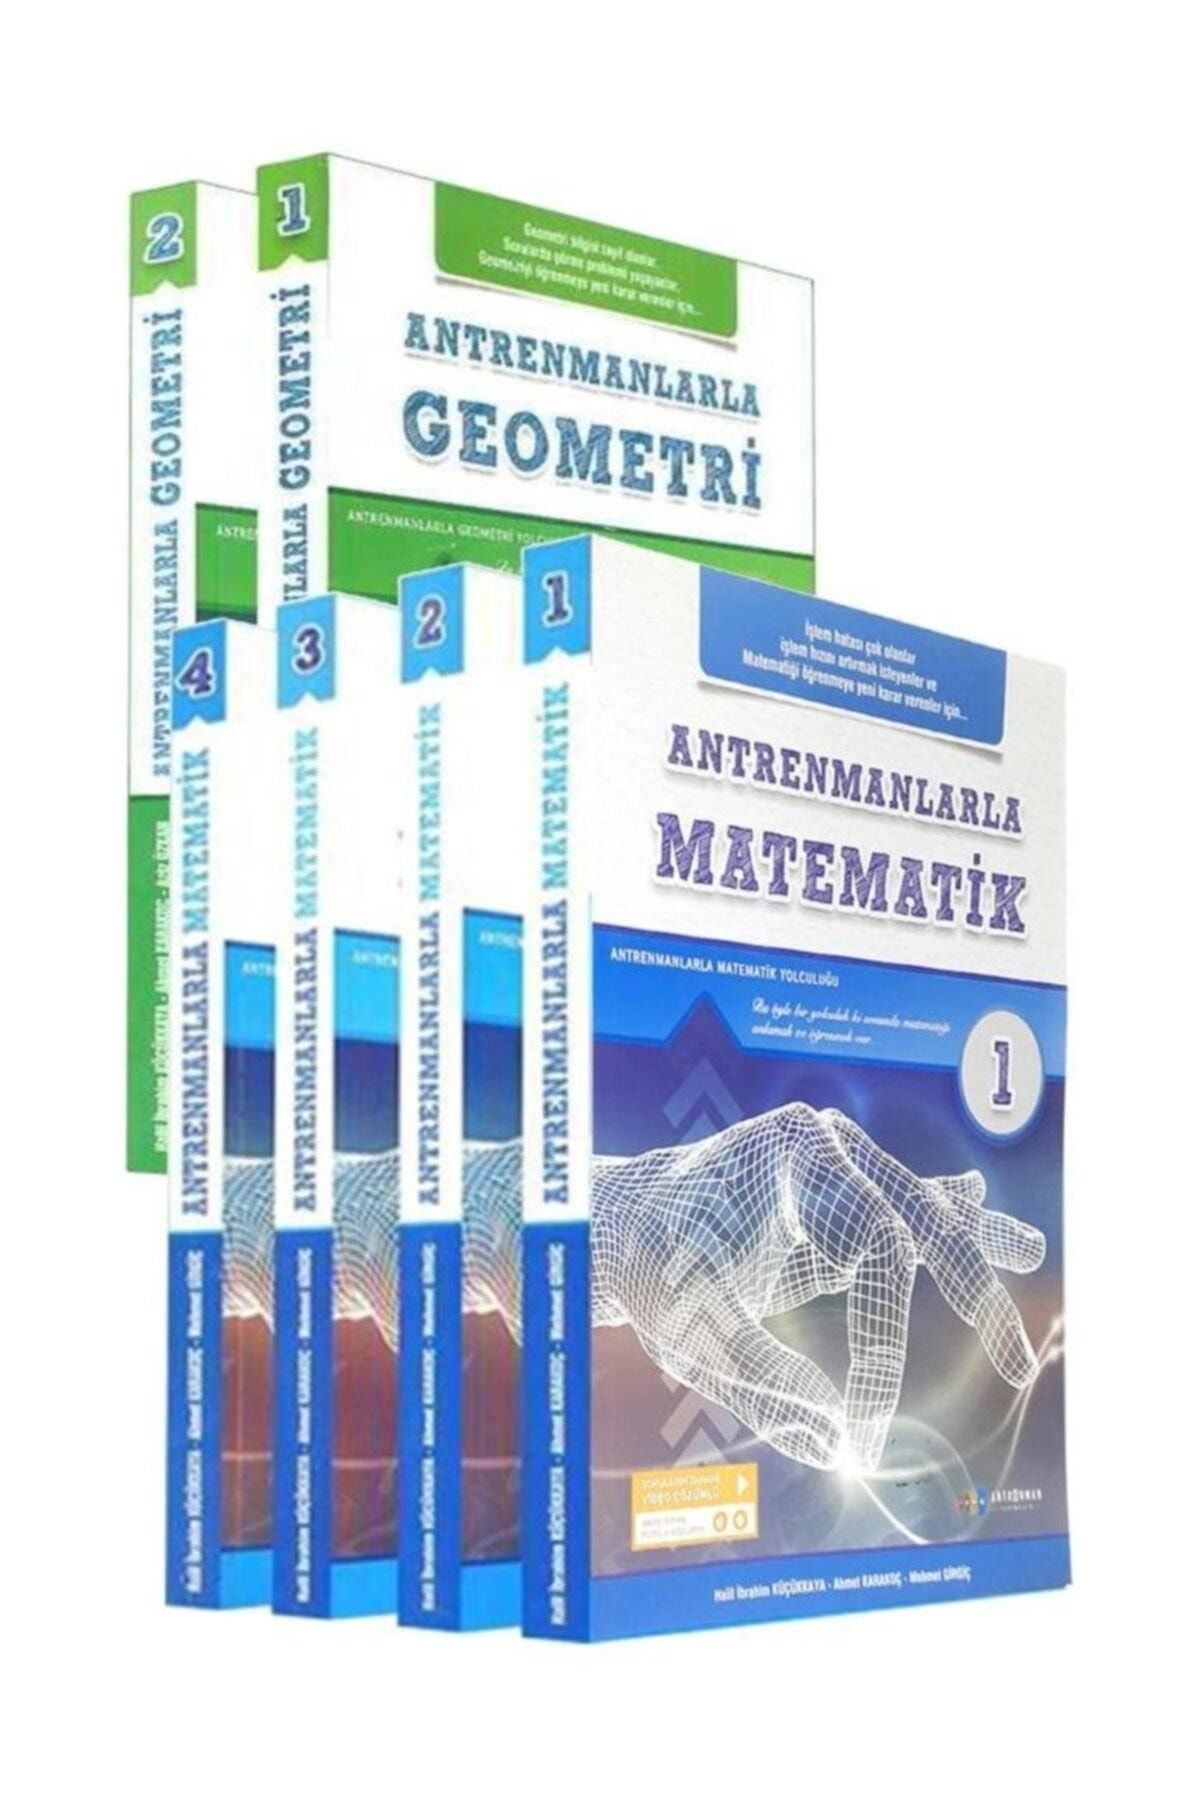 Antrenman Yayınları Antrenmanlarla 2020 Matematik 1-2-3-4 Antrenmanlarla Geometri 1-2 Set